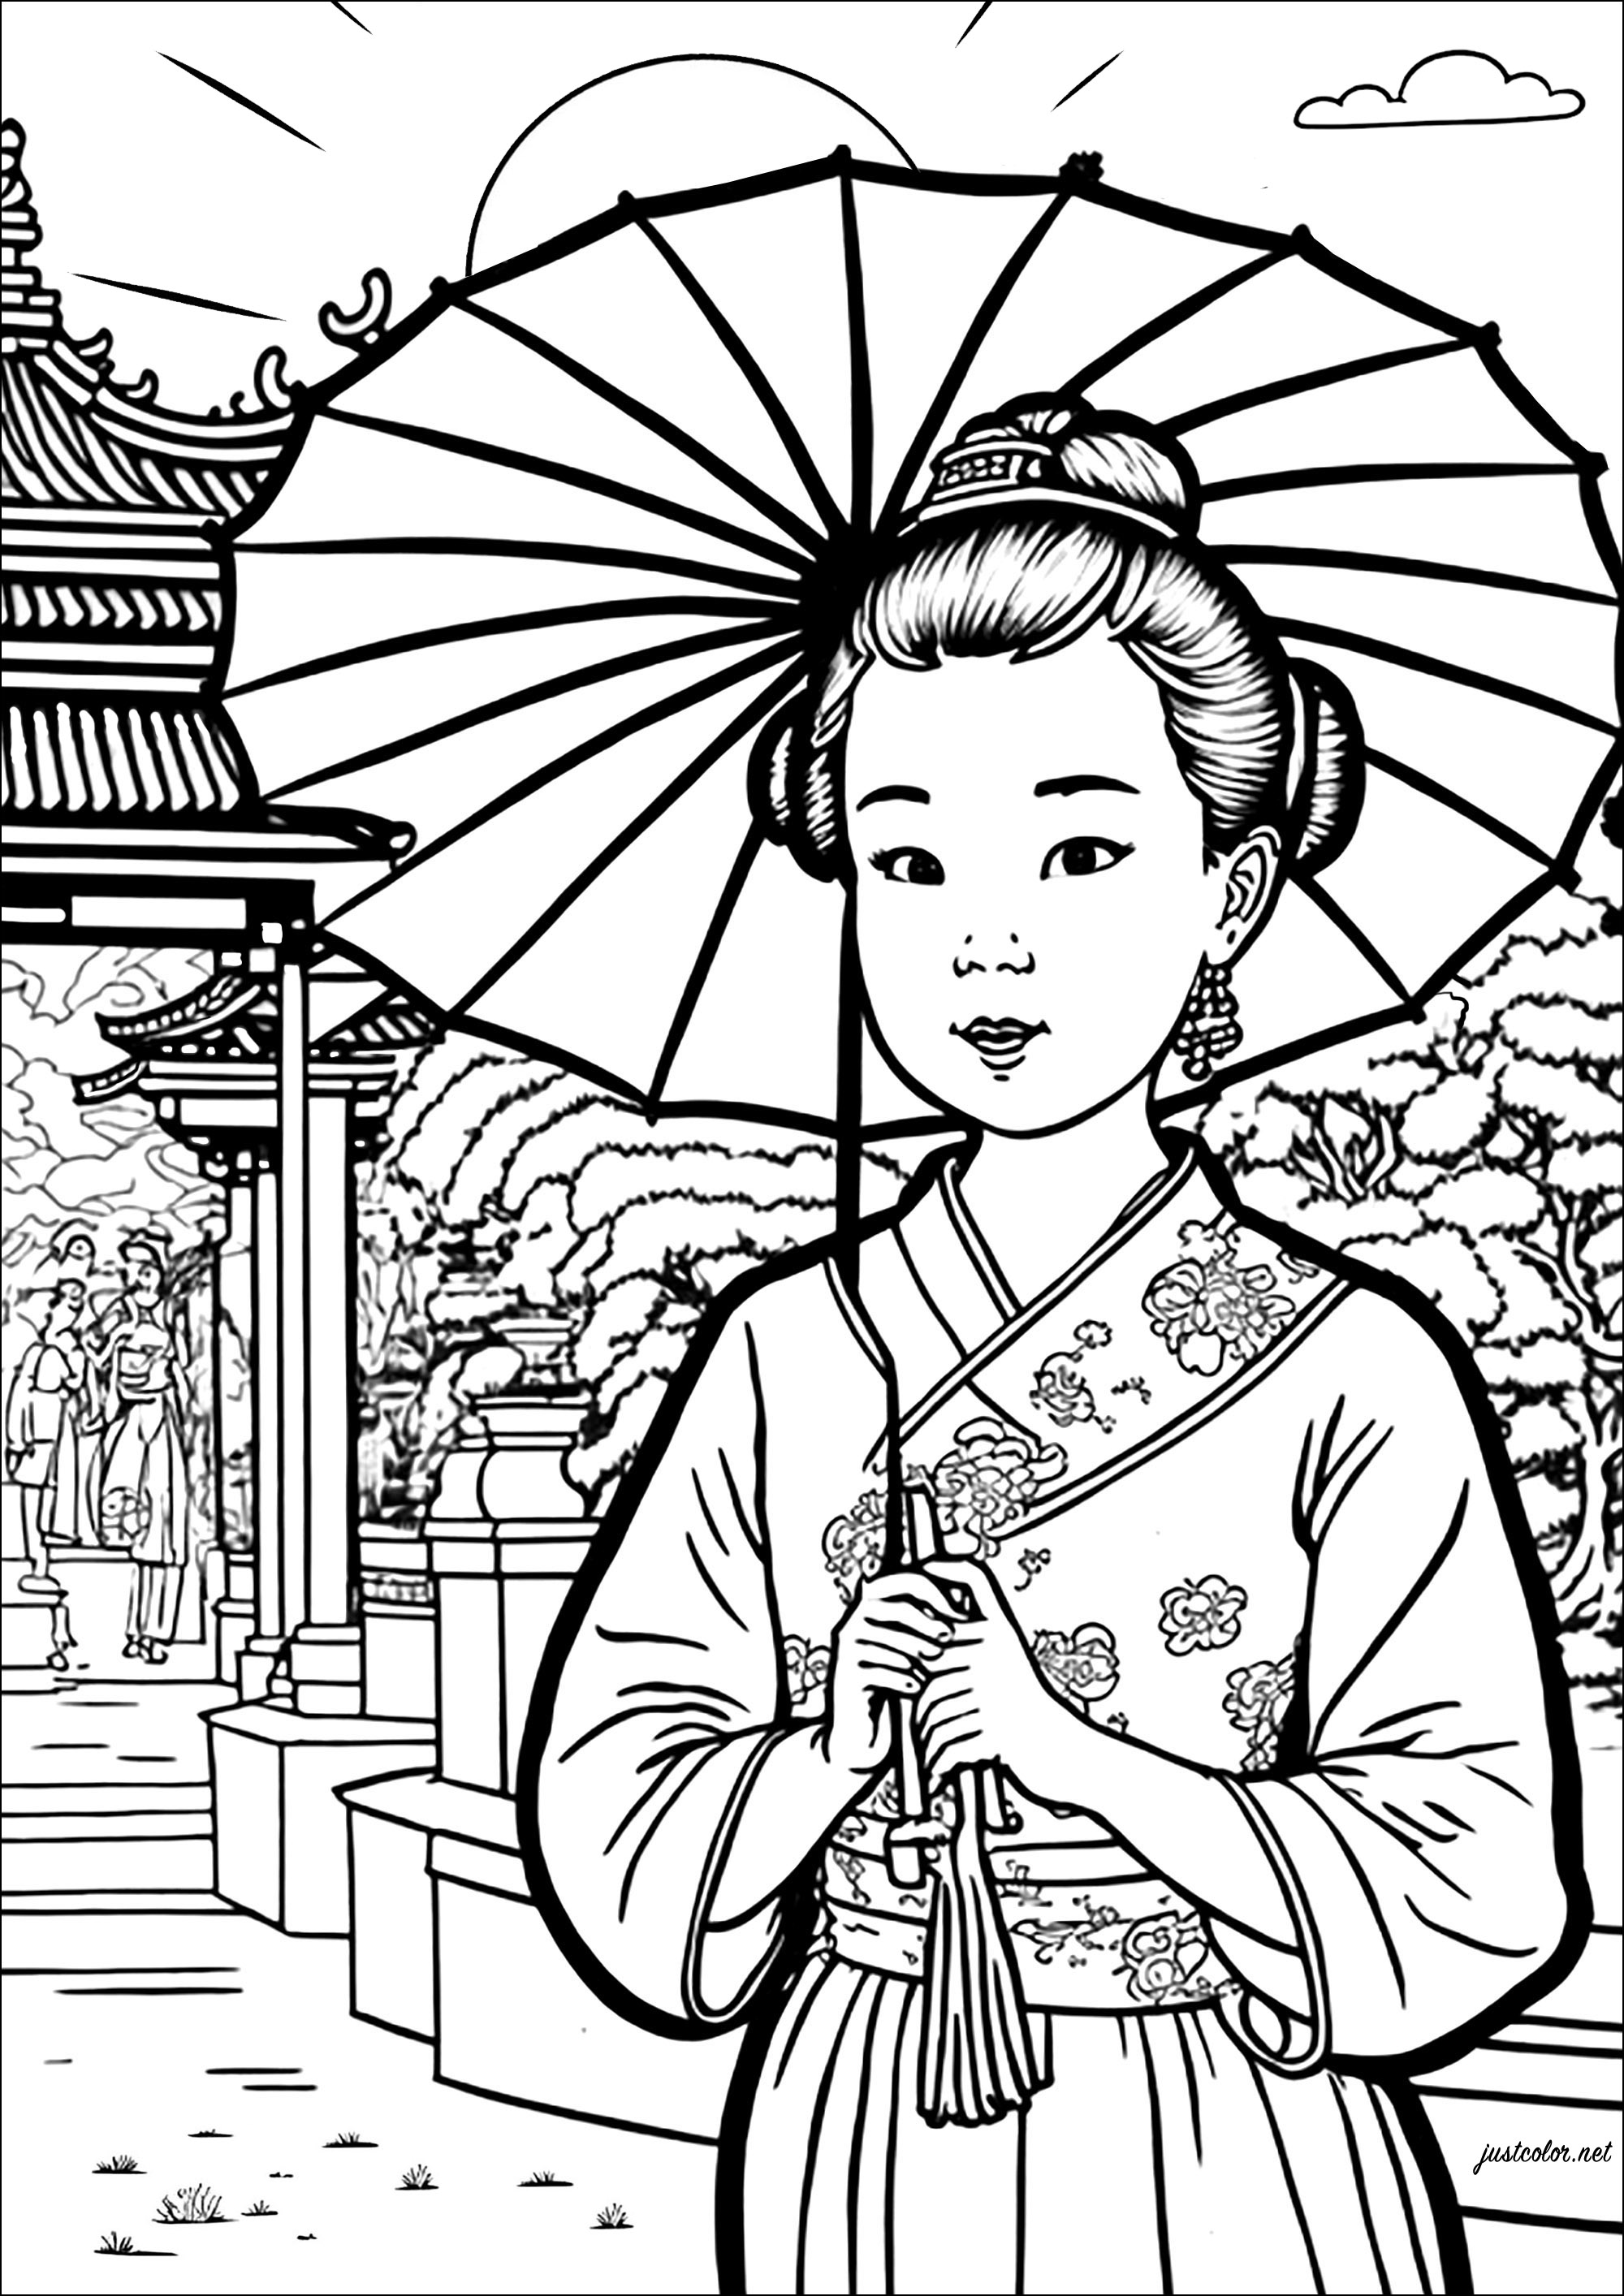 Pagina da colorare di una giovane donna cinese con un ombrello. Colorate anche il grazioso tempio e il giardino sullo sfondo di questo bellissimo disegno.